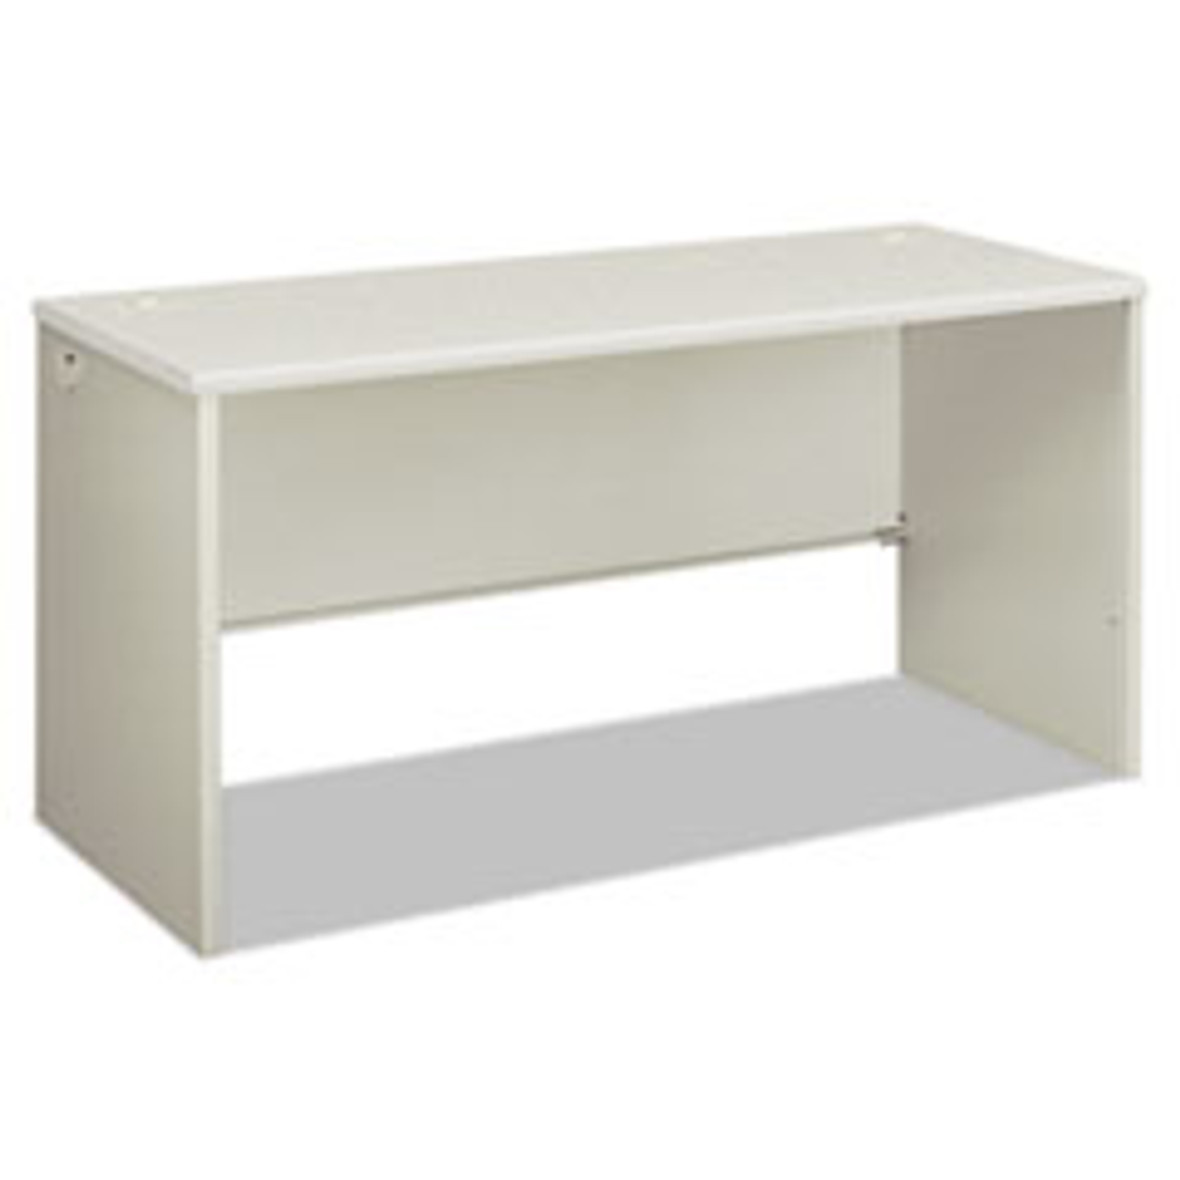 HON® 38000 Series Desk Shell, 60" x 24" x 30", Light Gray/Silver, 1 Each/Carton